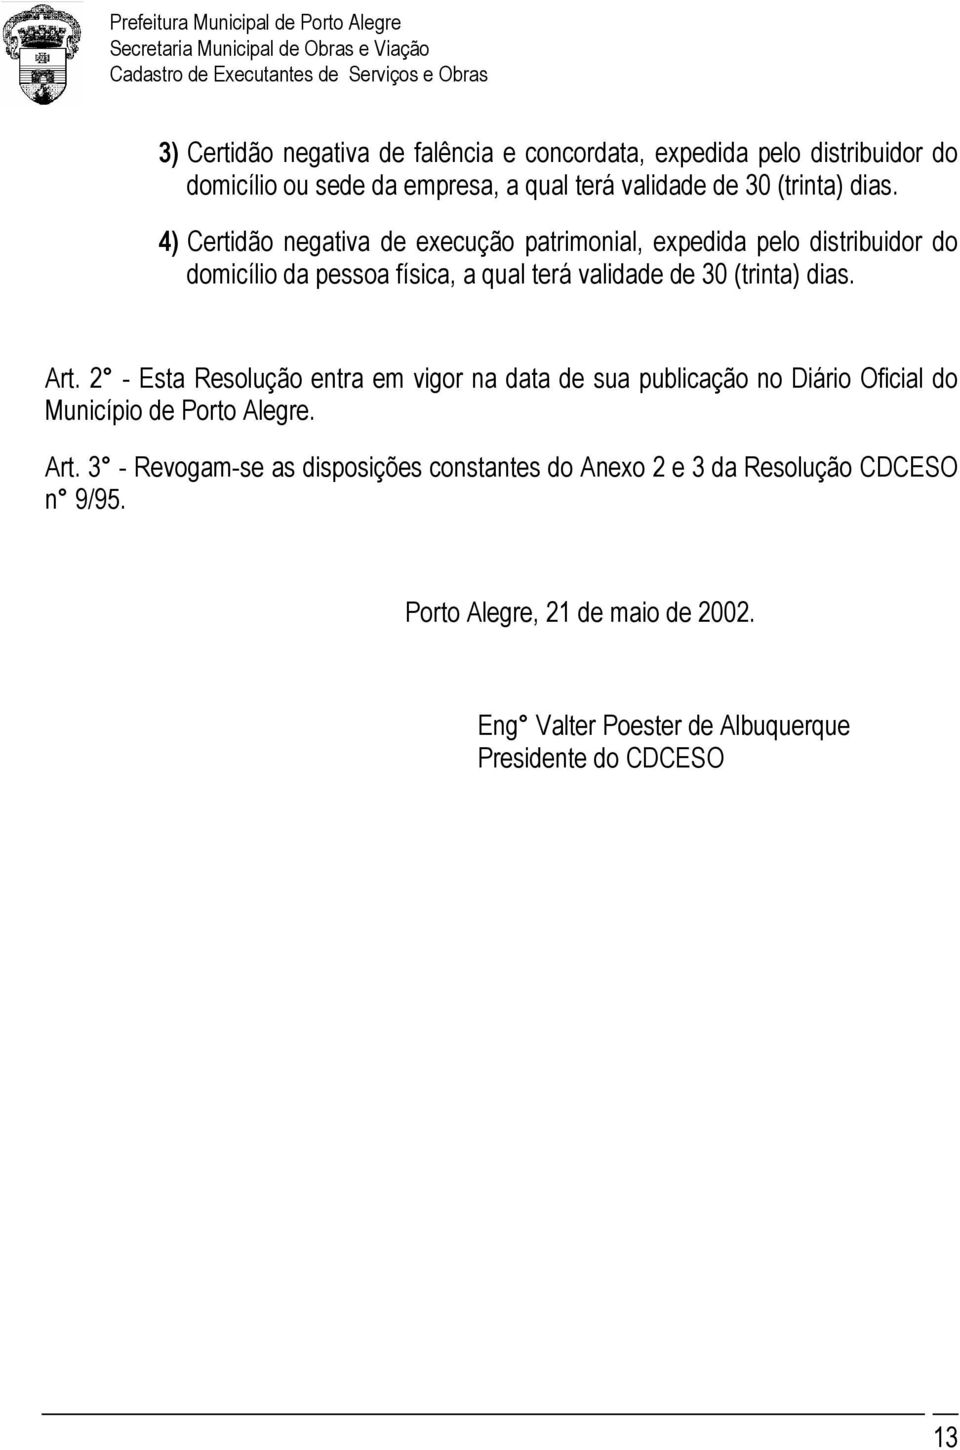 dias. Art. 2 - Esta Resolução entra em vigor na data de sua publicação no Diário Oficial do Município de Porto Alegre. Art. 3 - Revogam-se as disposições constantes do Anexo 2 e 3 da Resolução CDCESO n 9/95.